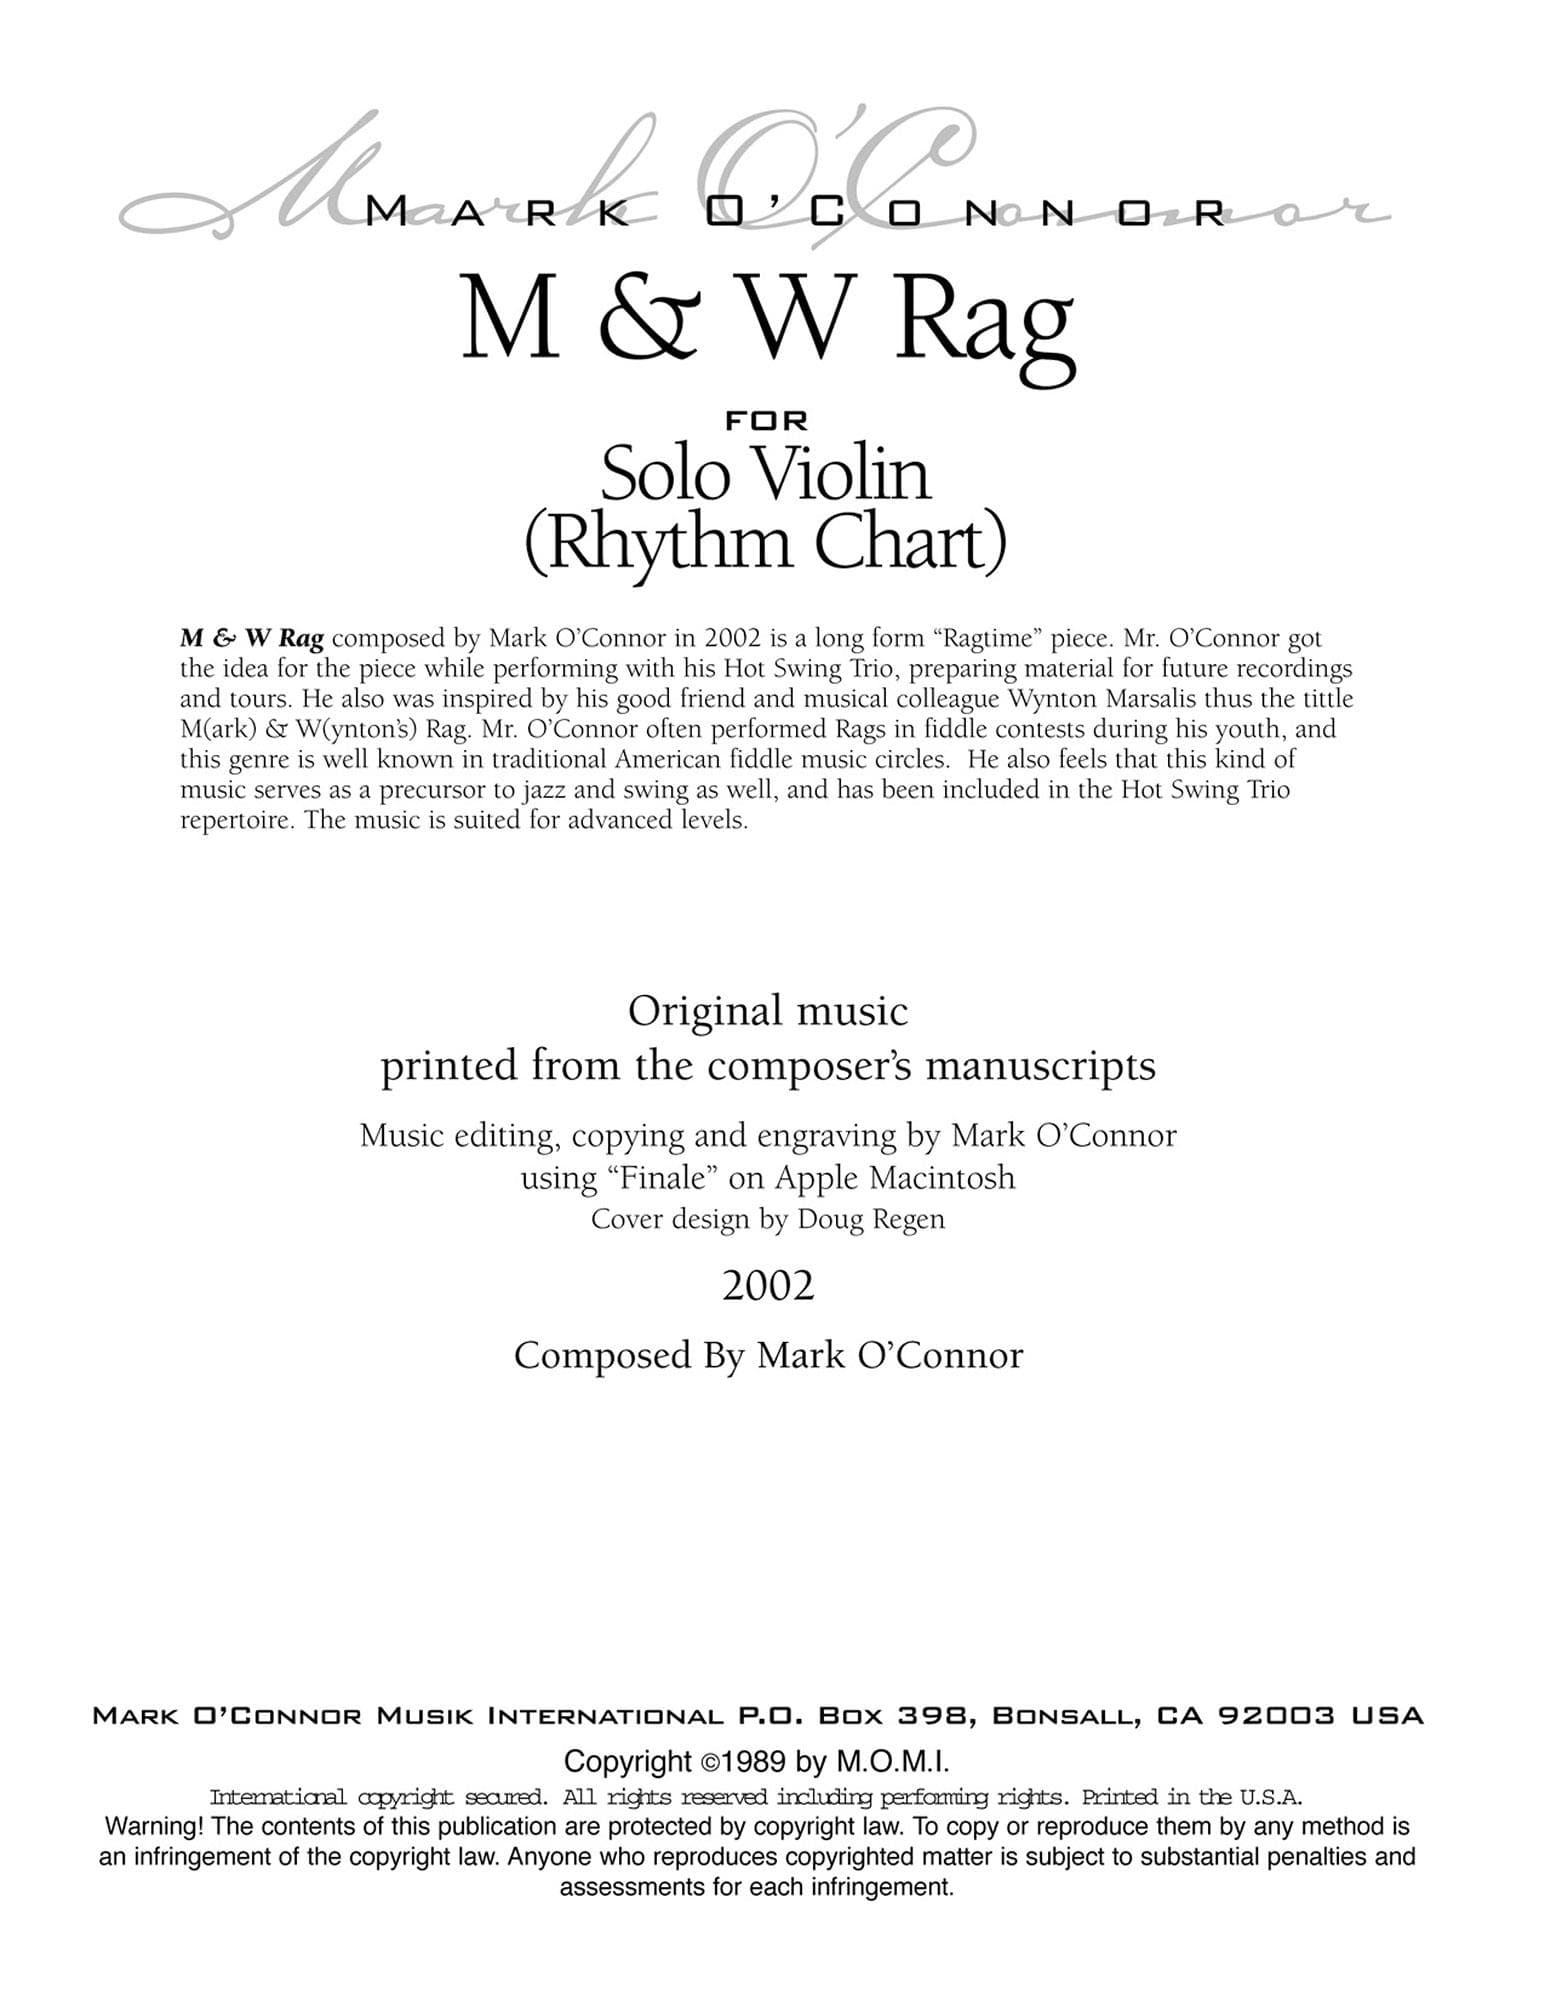 O'Connor, Mark - M & W Rag - Rhythm Chart - Digital Download